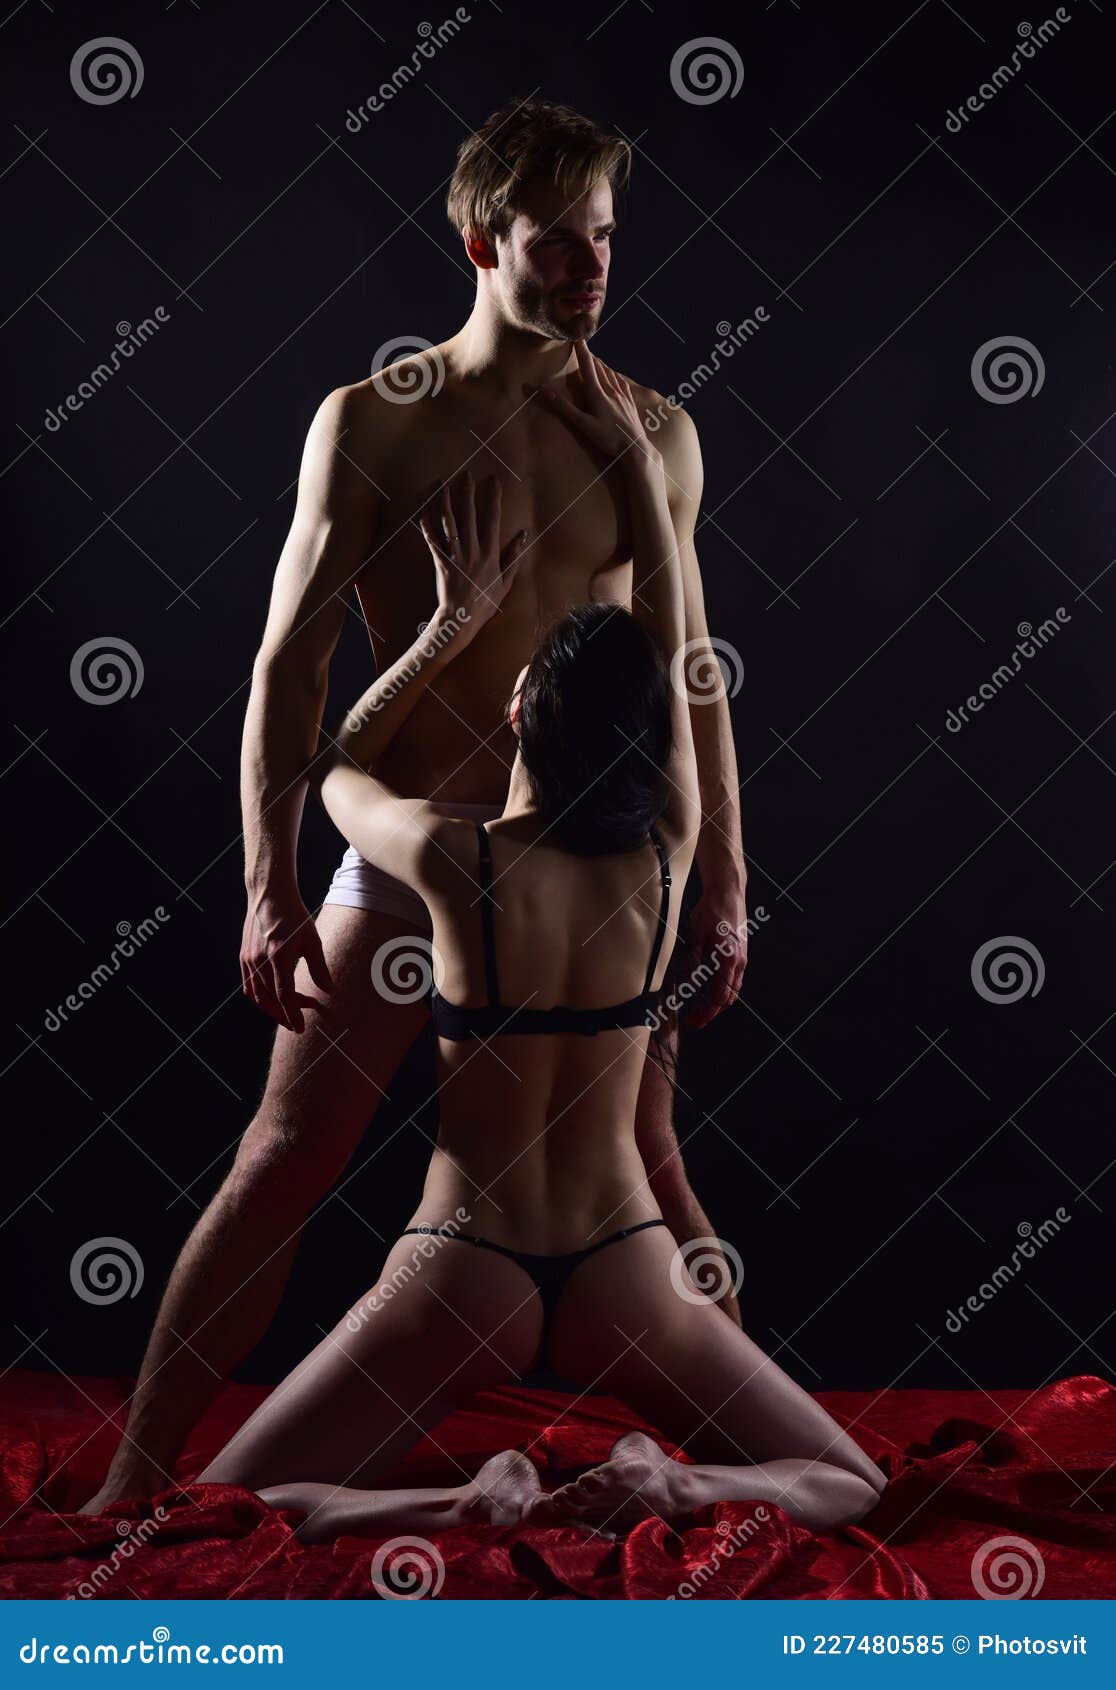 Casal Sensual Sensual Apaixonado Por Homem E Mulher Pelados Tendo Sexo Oral E Jogos Eróticos Paixão Imagem de Stock foto